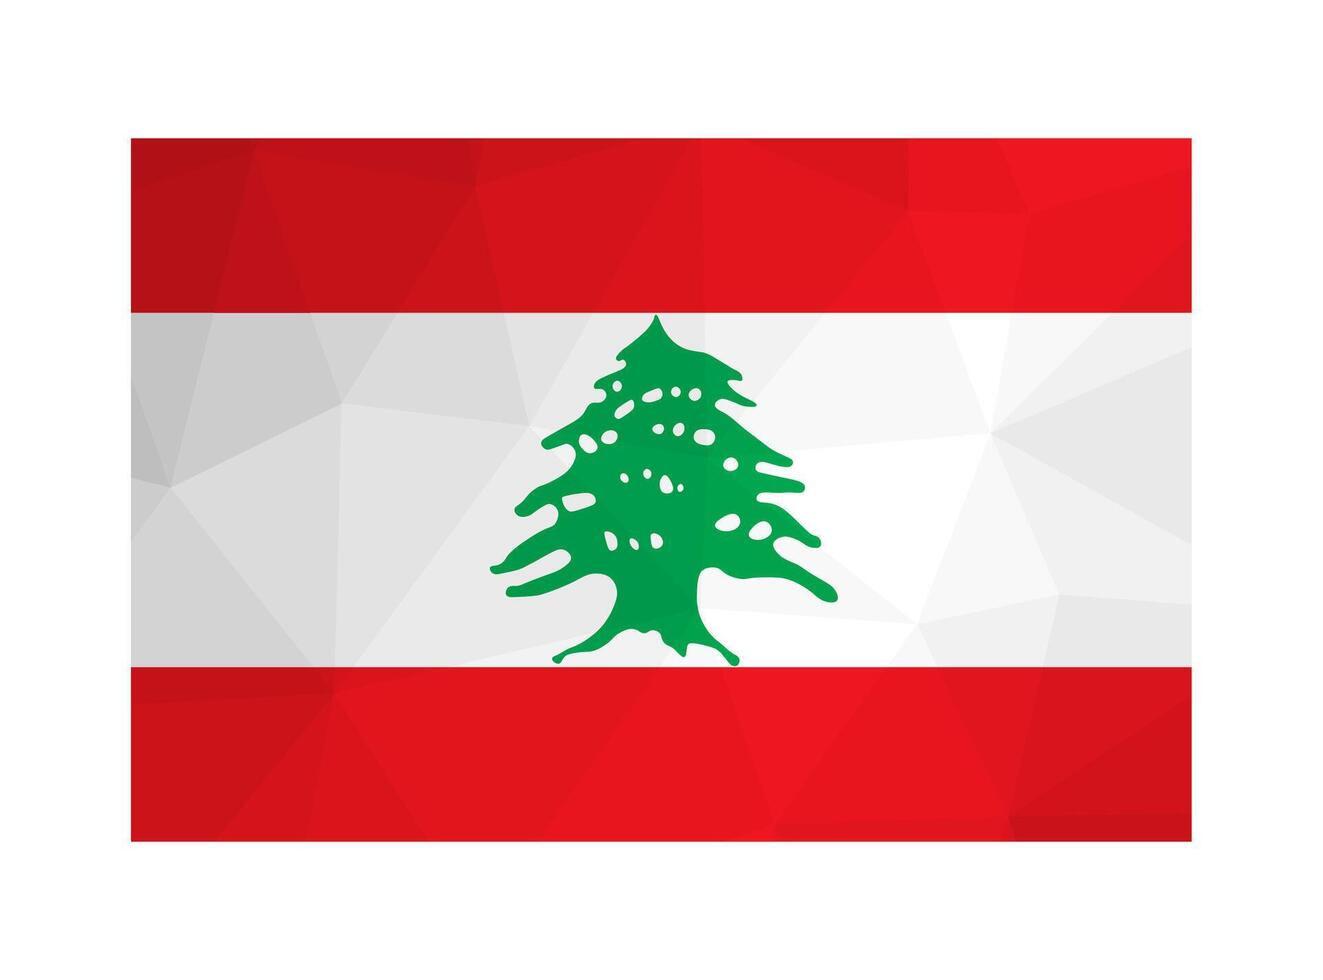 vektor isolerat illustration. nationell lebanese flagga med vit, röd Ränder och grön ceder. officiell symbol av Libanon. kreativ design i låg poly stil med triangel- former. lutning effekt.